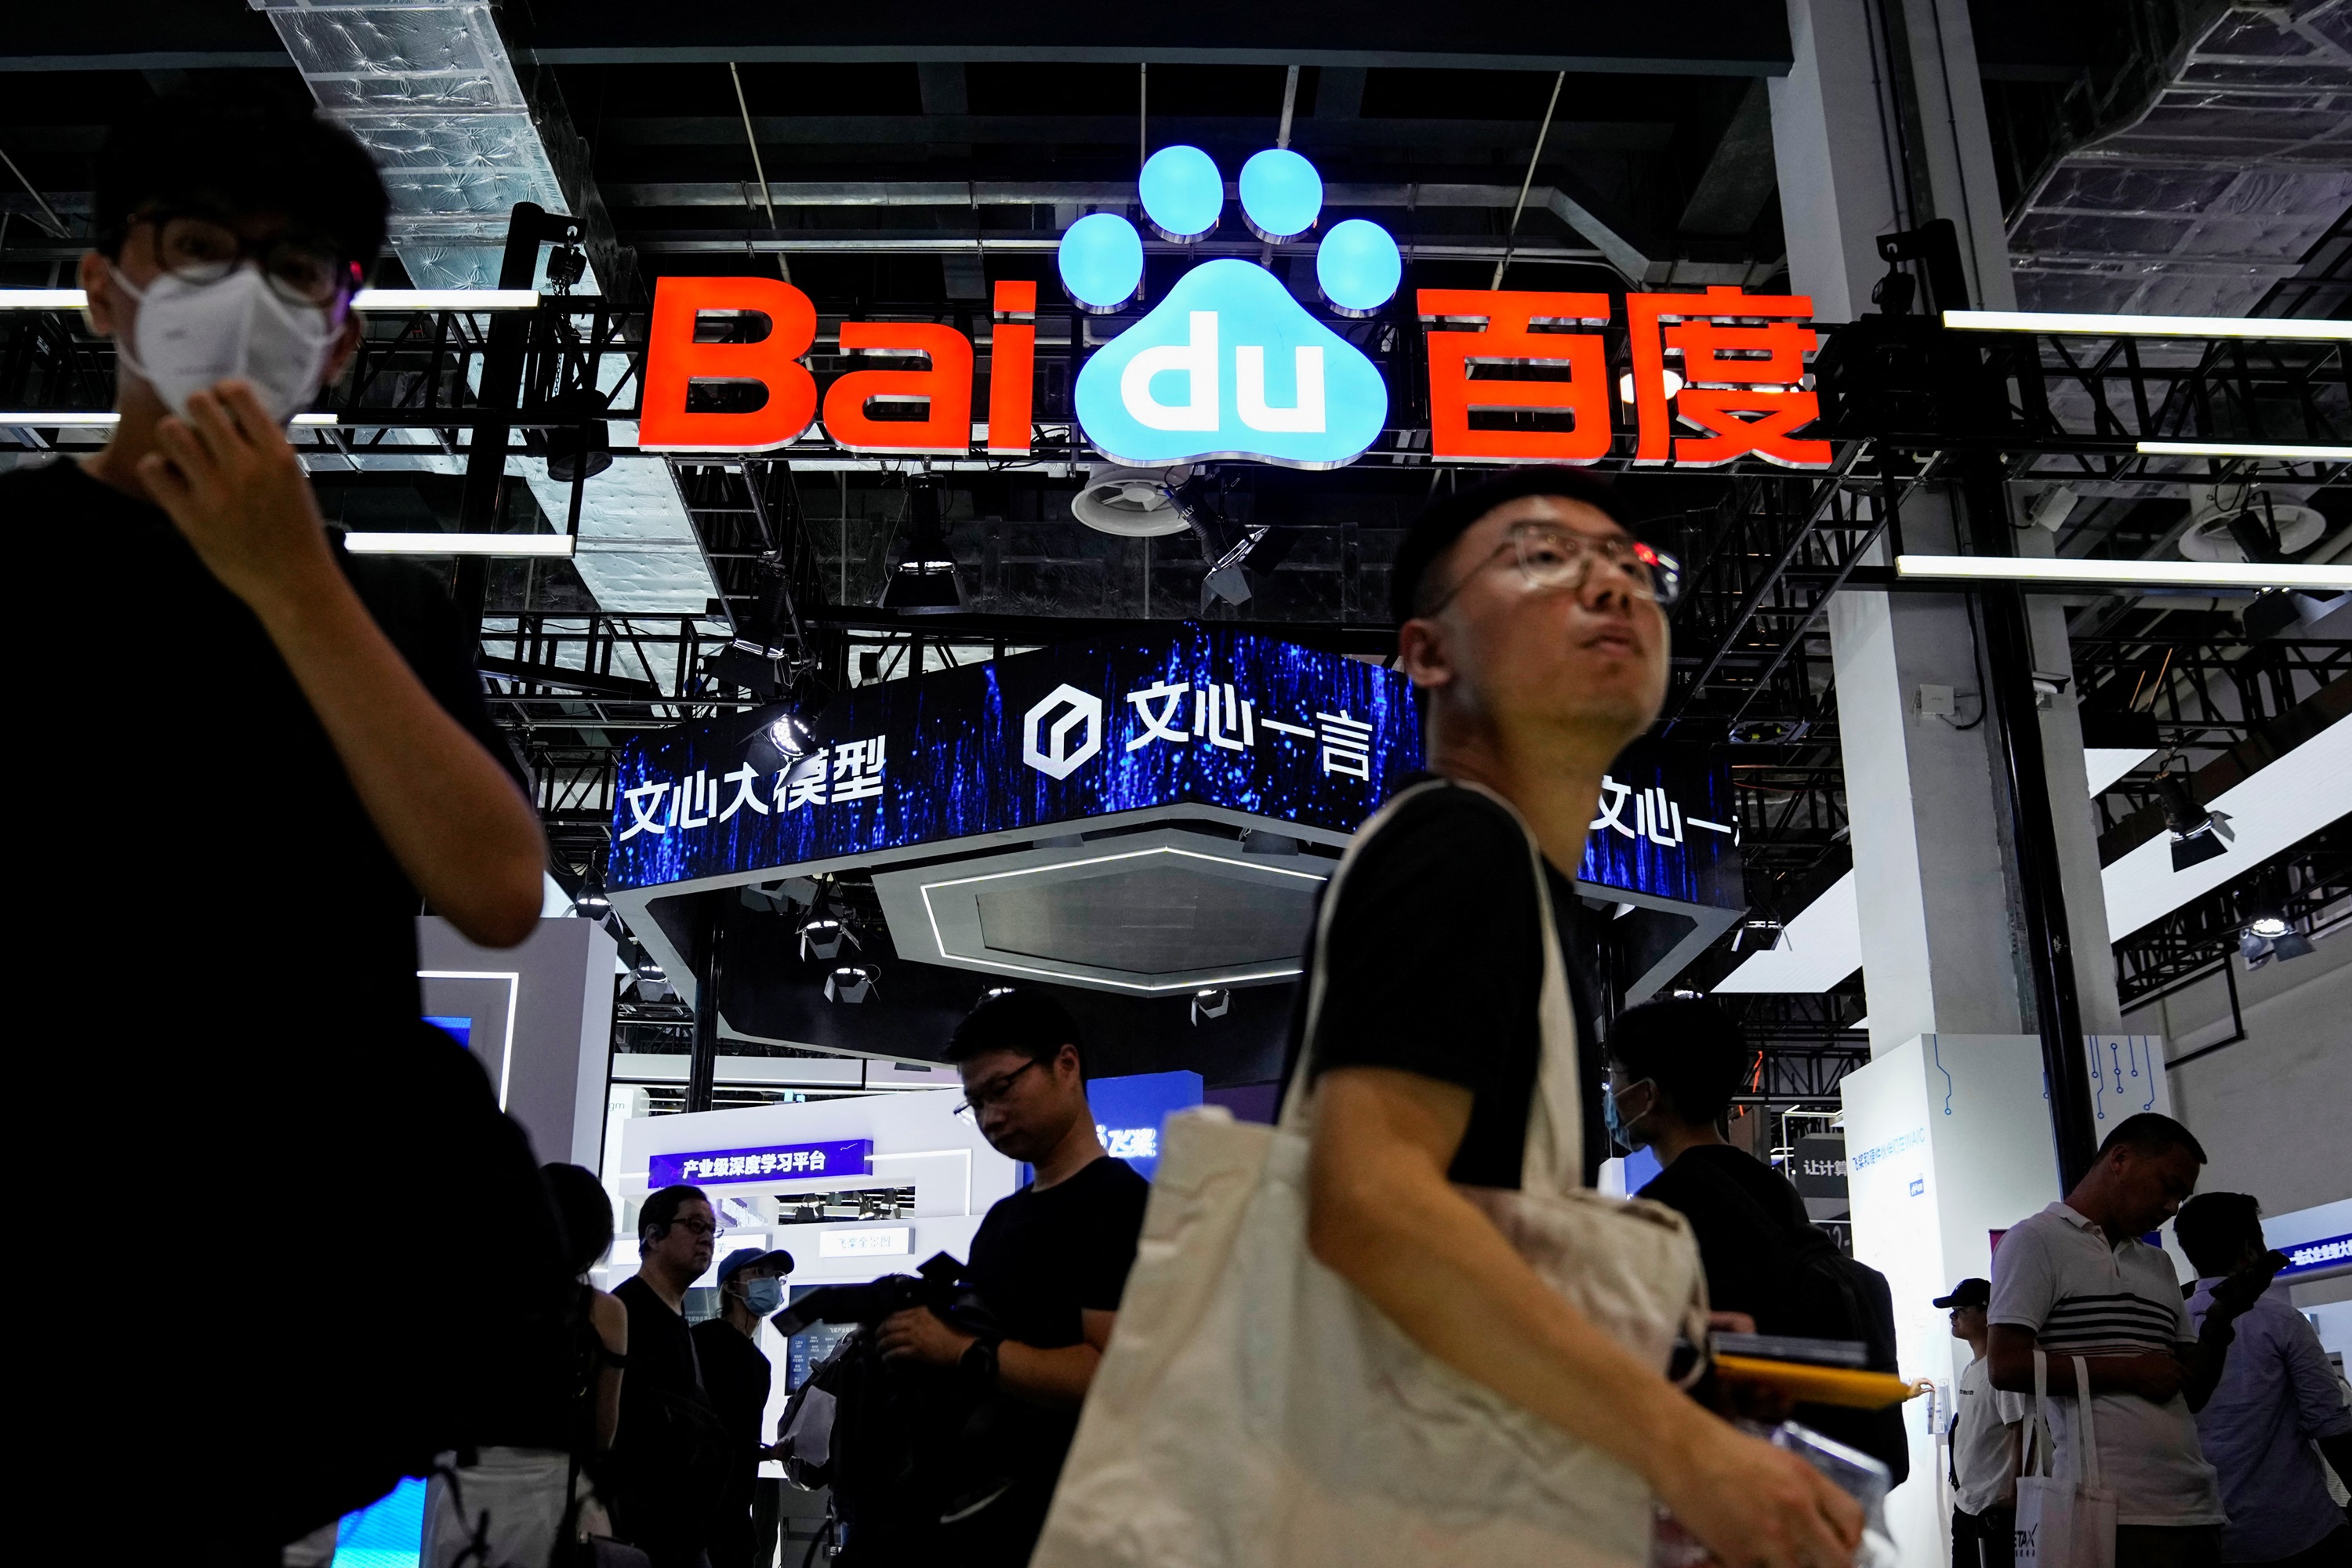 Baidu zamawia chipy sztucznej inteligencji od Huawei zamiast od Nvidii